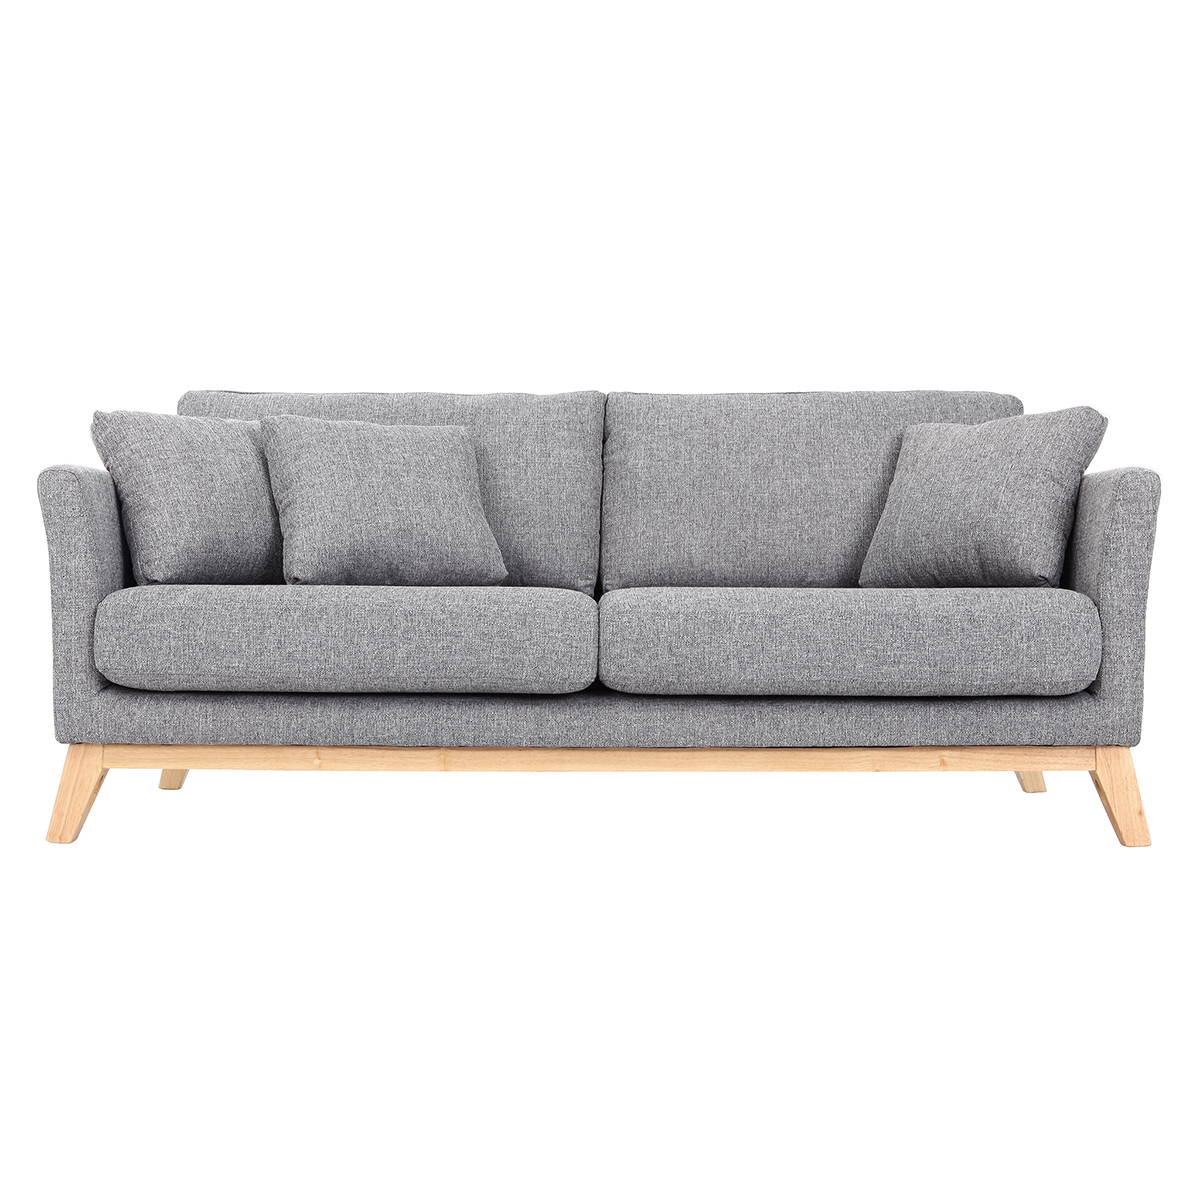 Canapé scandinave déhoussable 3 places en tissu gris clair et bois clair OSLO vue1